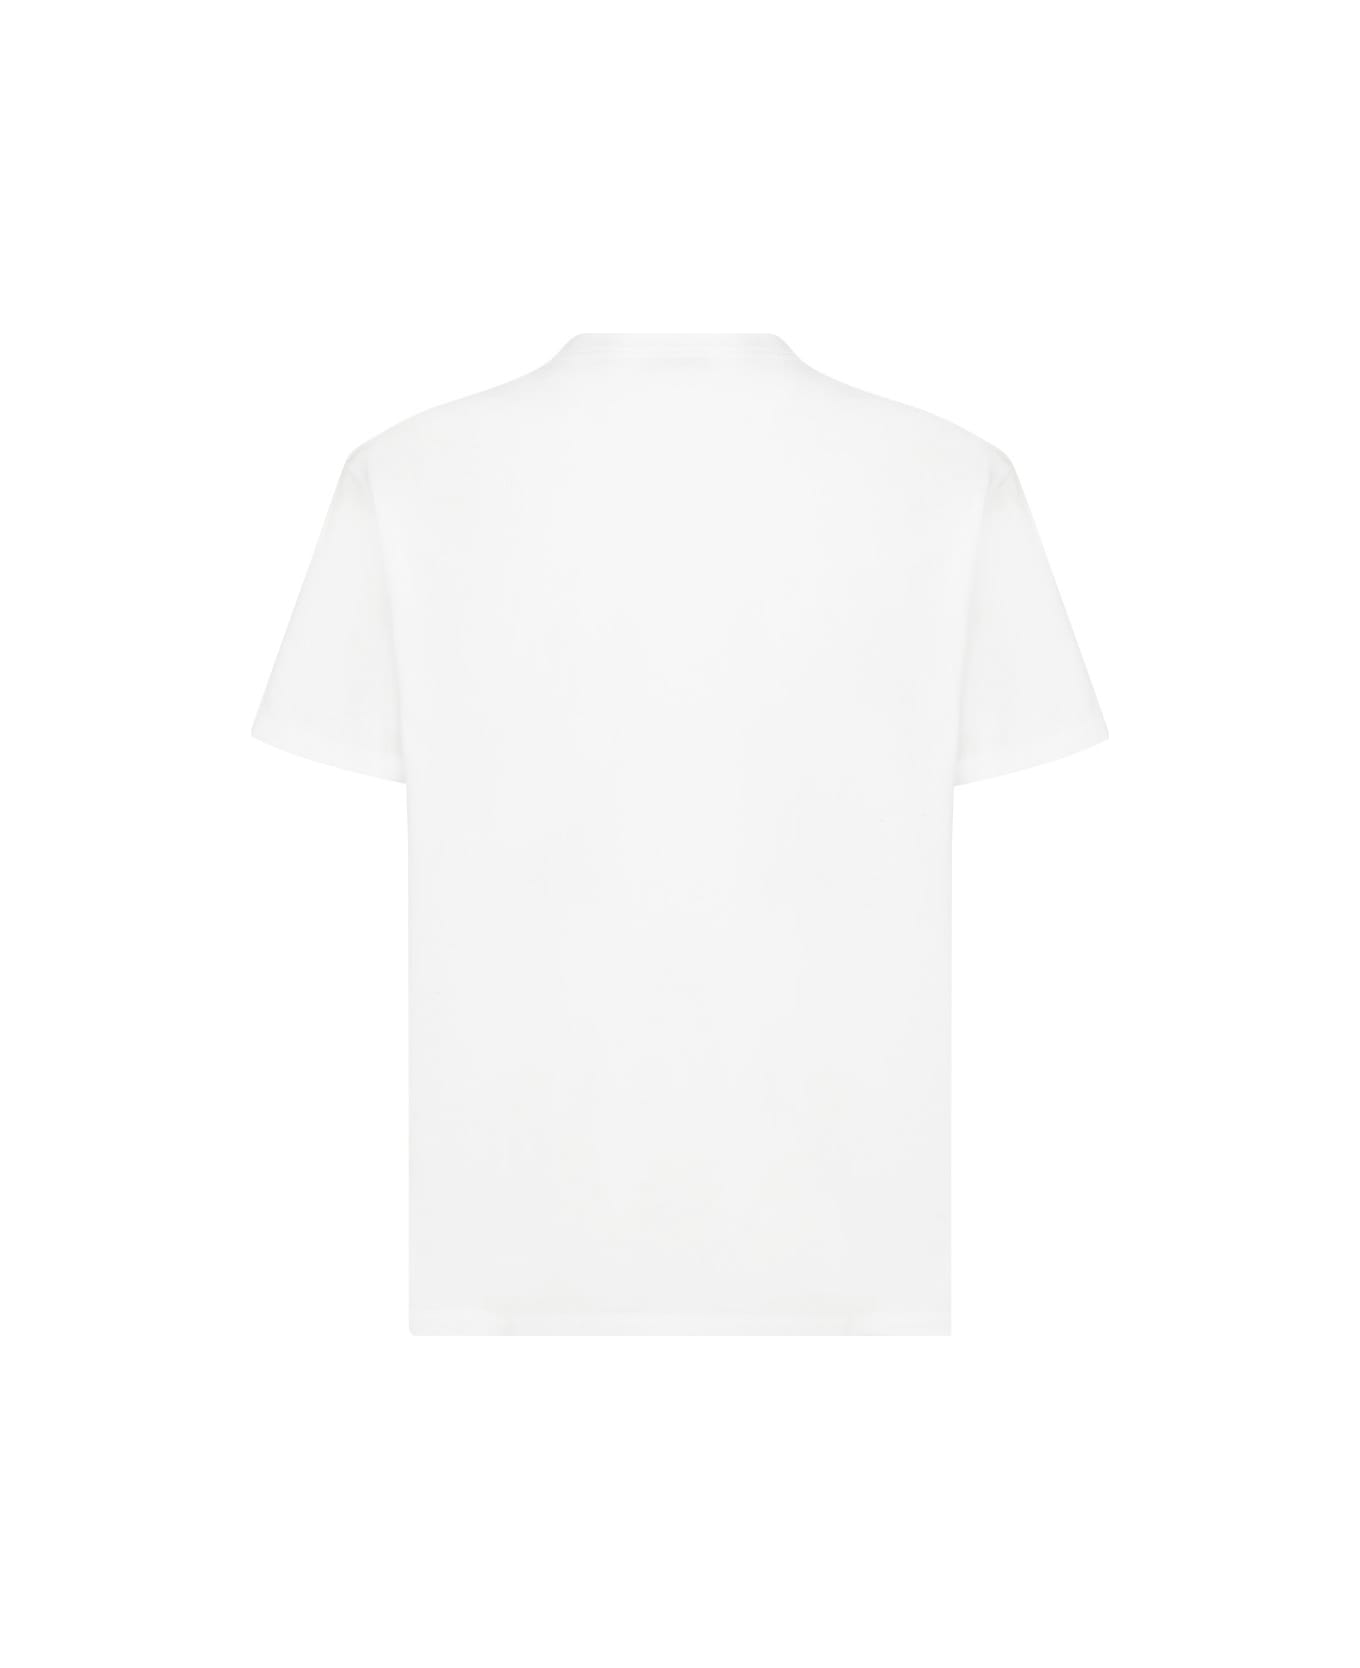 Alexander McQueen T-shirt - White/mix